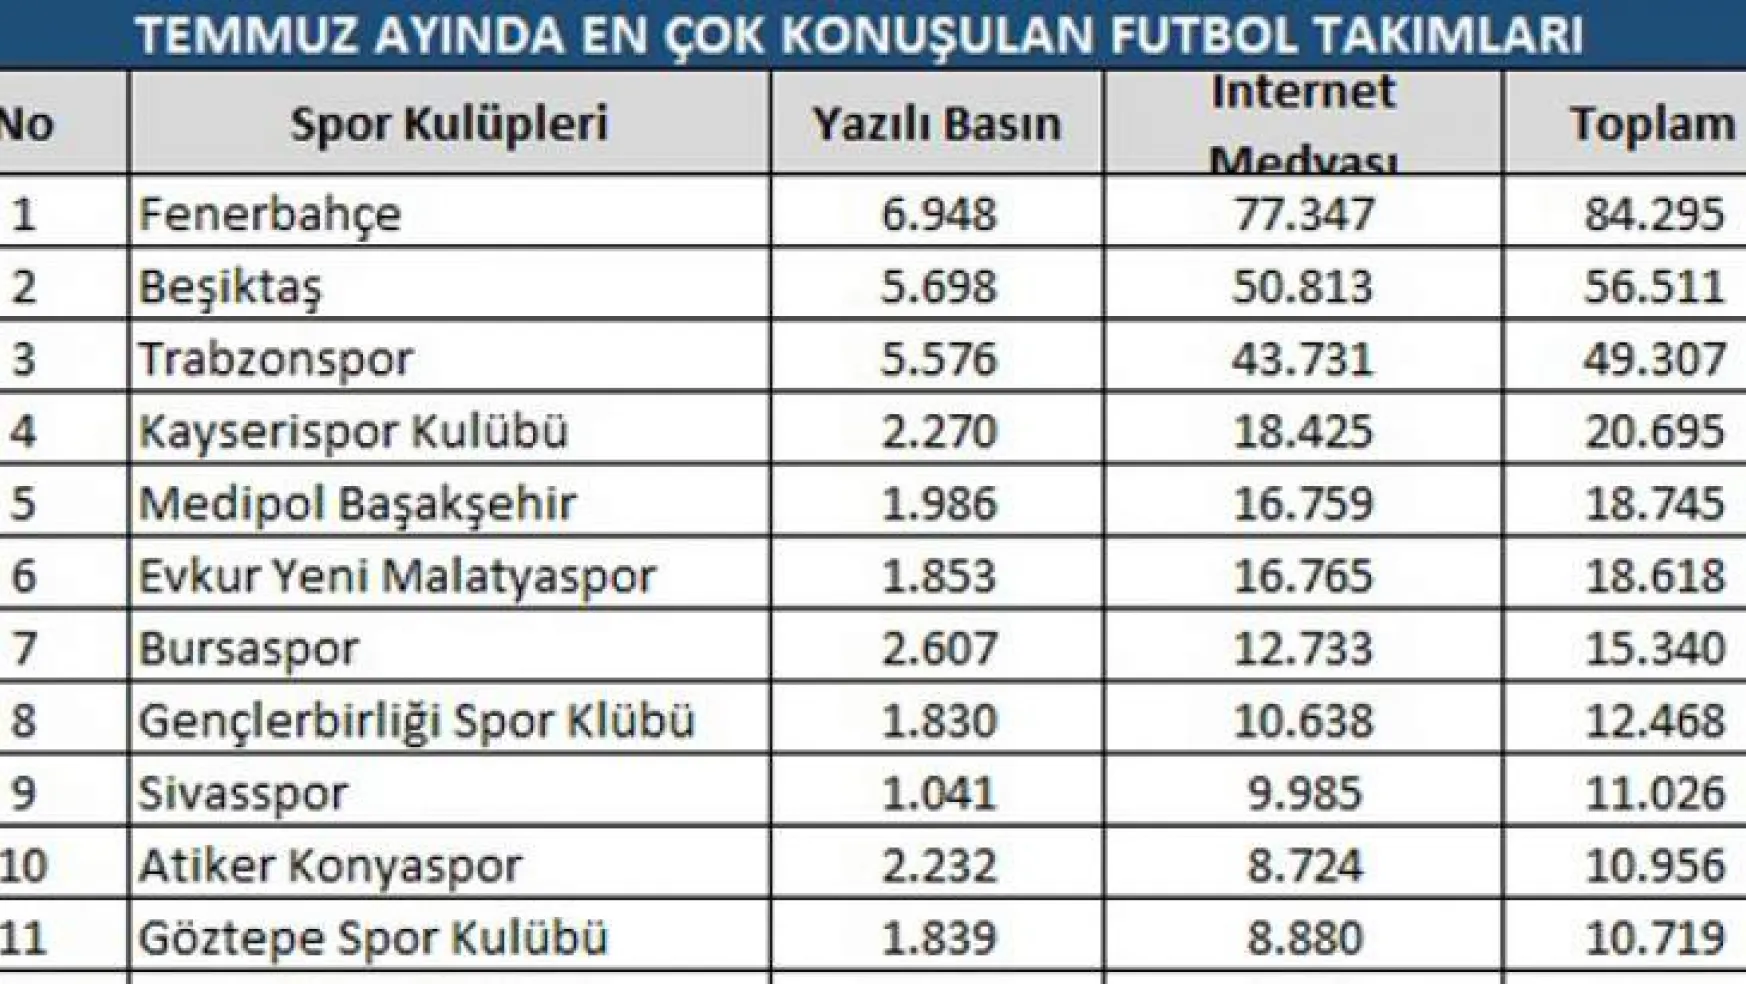 Temmuz ayında en çok Fenerbahçe konuşuldu